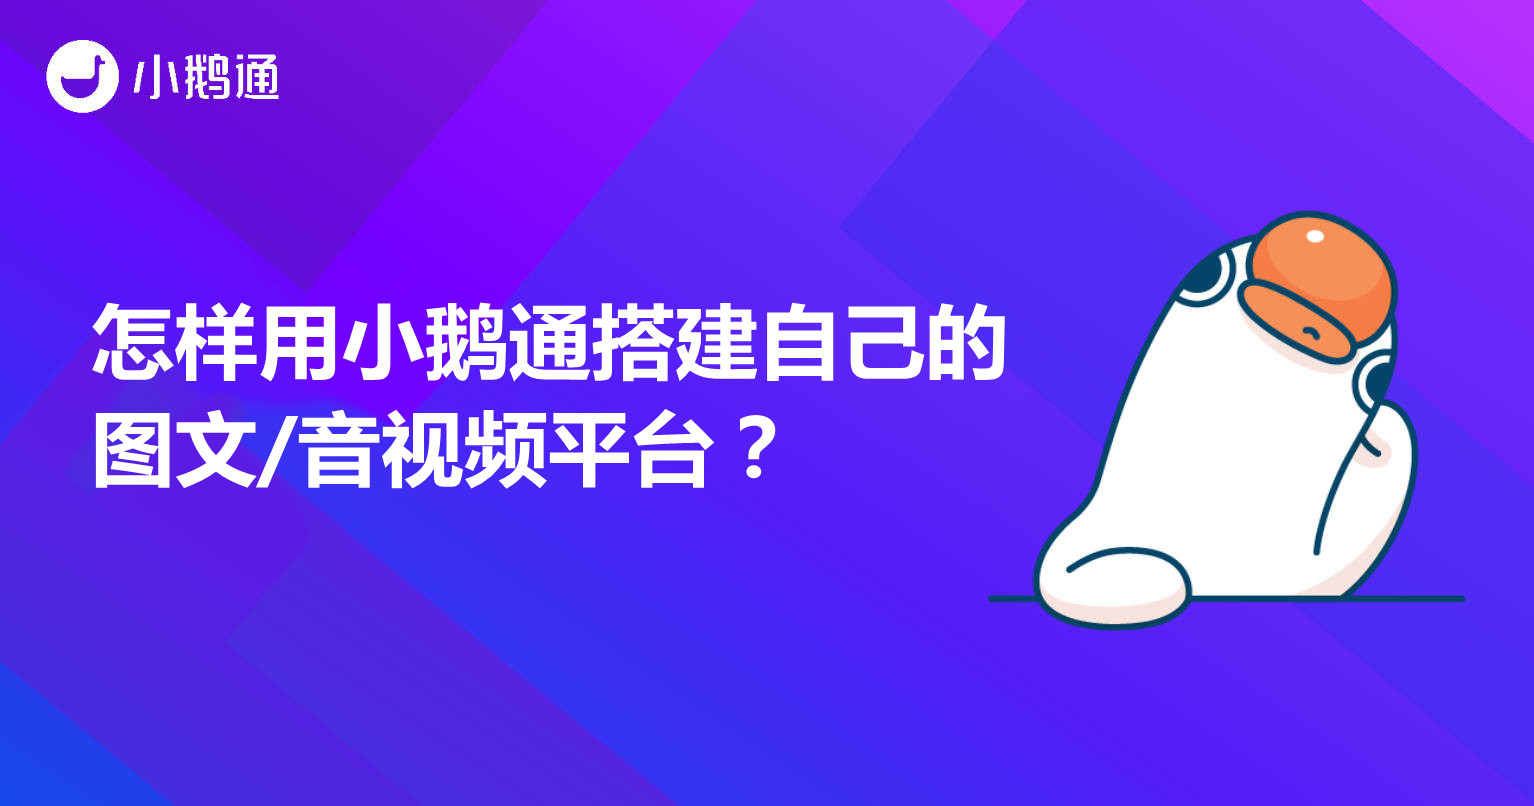 江北怎样用小鹅通搭建自己的图文/音视频平台？